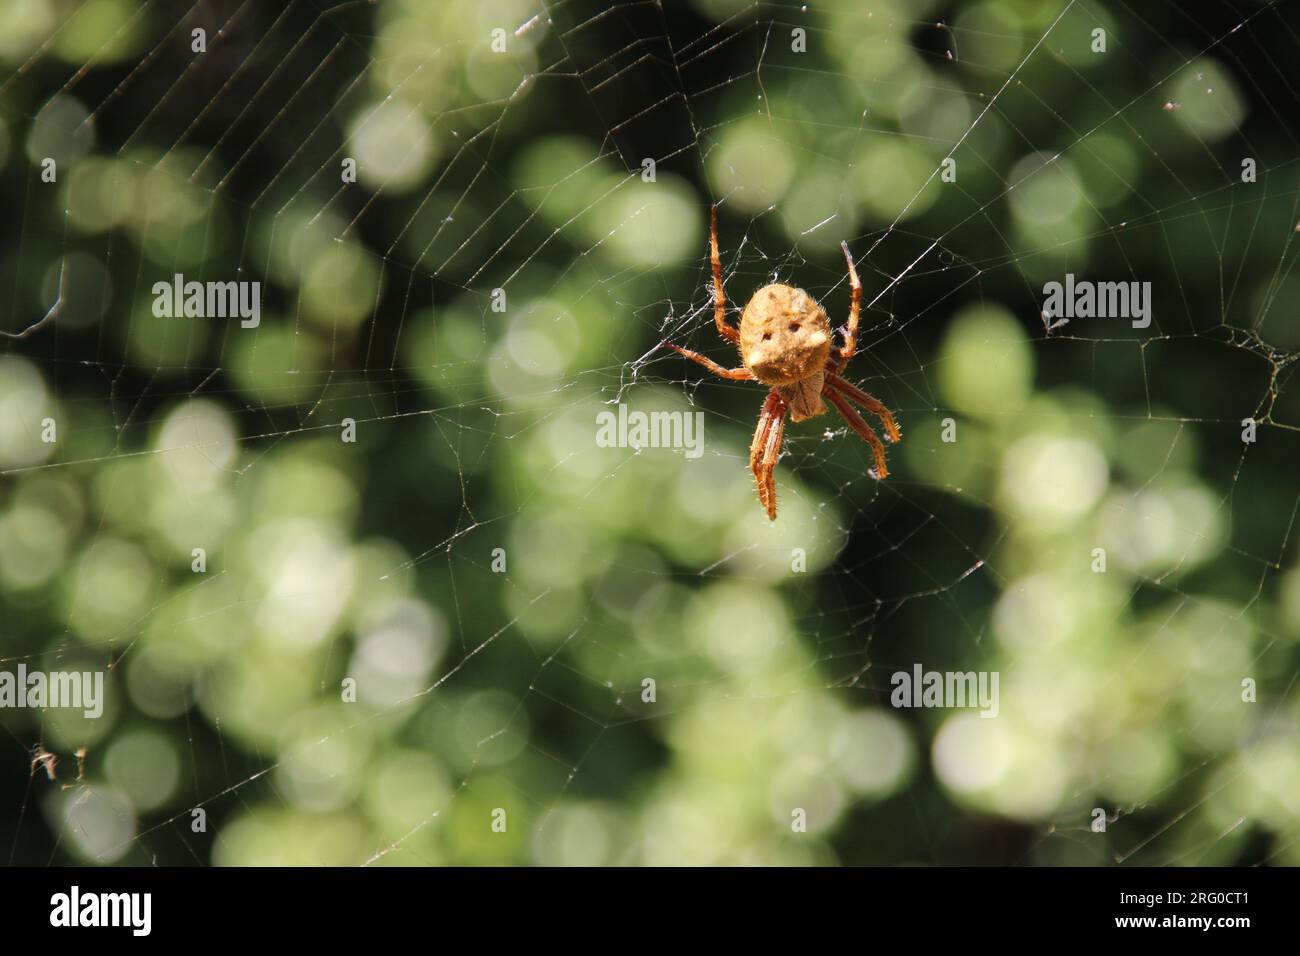 Pequeña, peluda araña marrón teje una red en un jardín de patio trasero. Australia tiene muchas especies de arañas, tanto inofensivas como mortales. Foto de stock